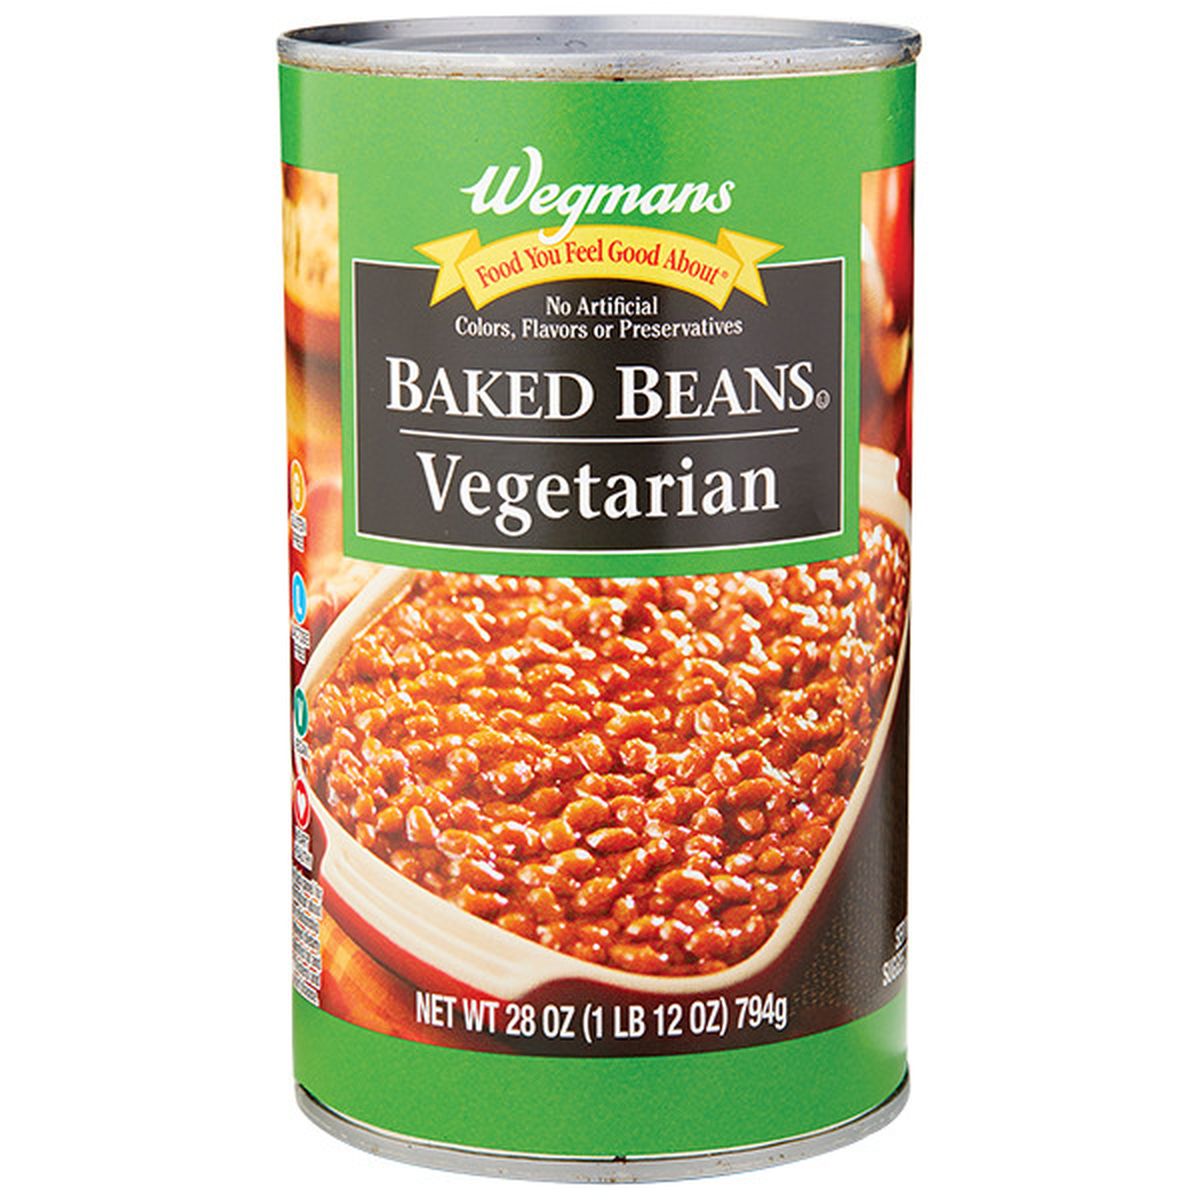 Calories in Wegmans Vegetarian Baked Beans